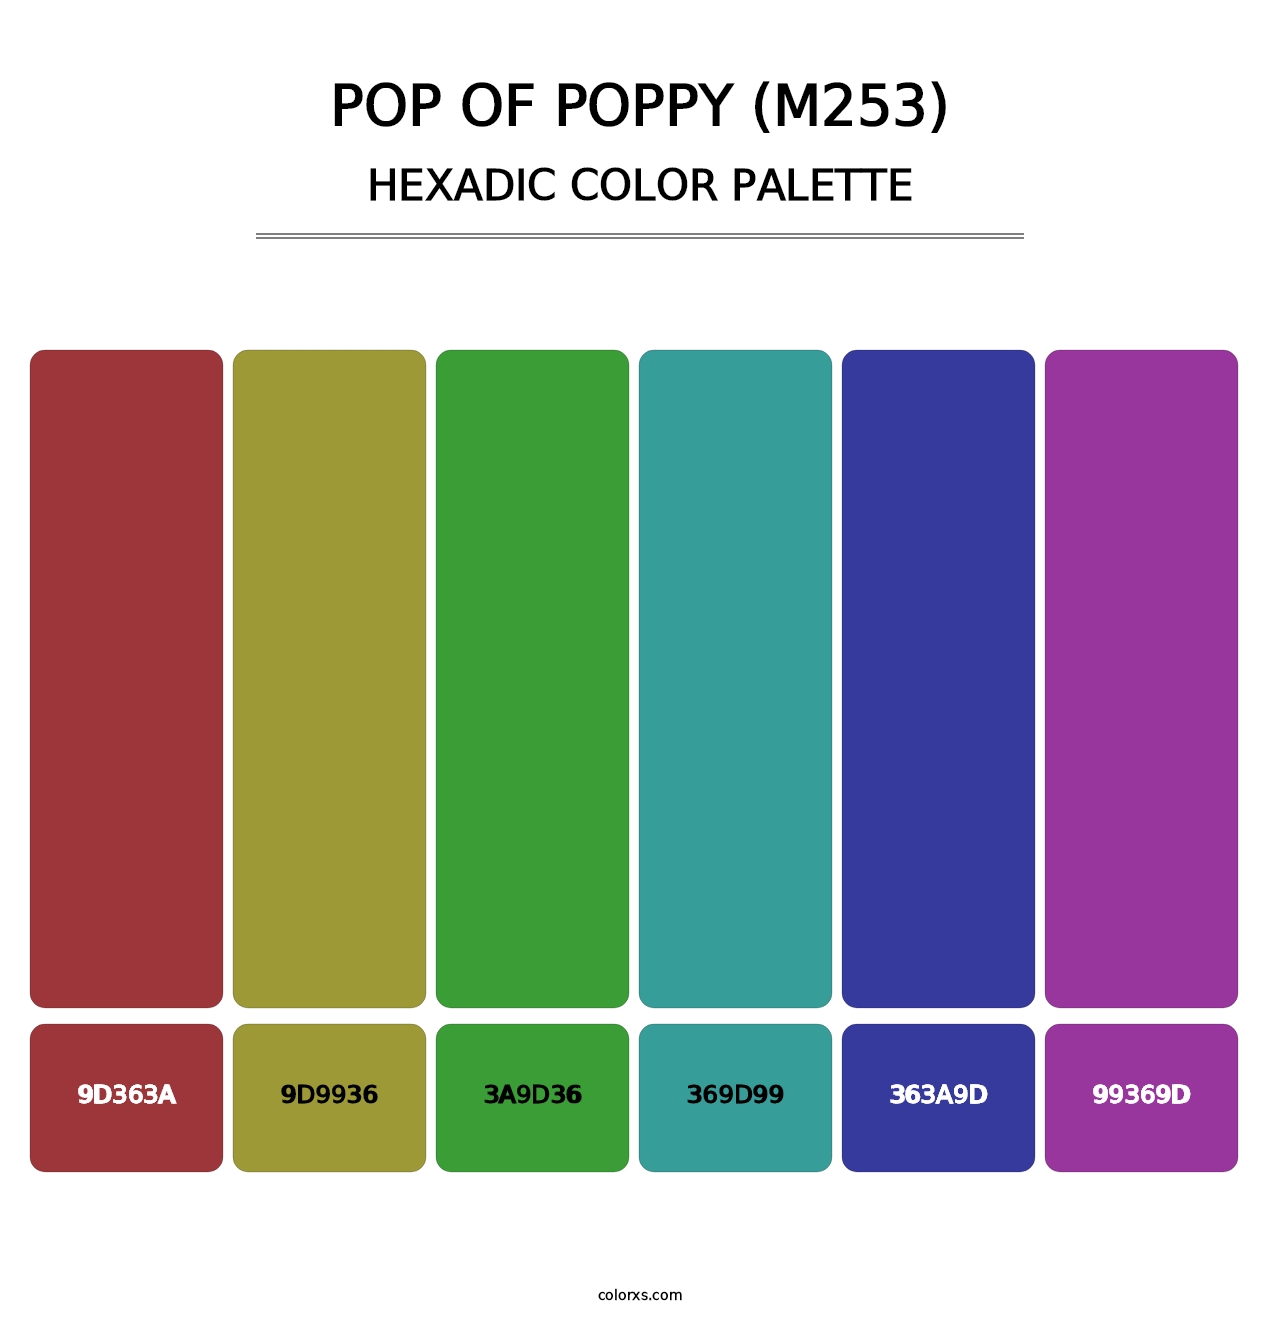 Pop of Poppy (M253) - Hexadic Color Palette